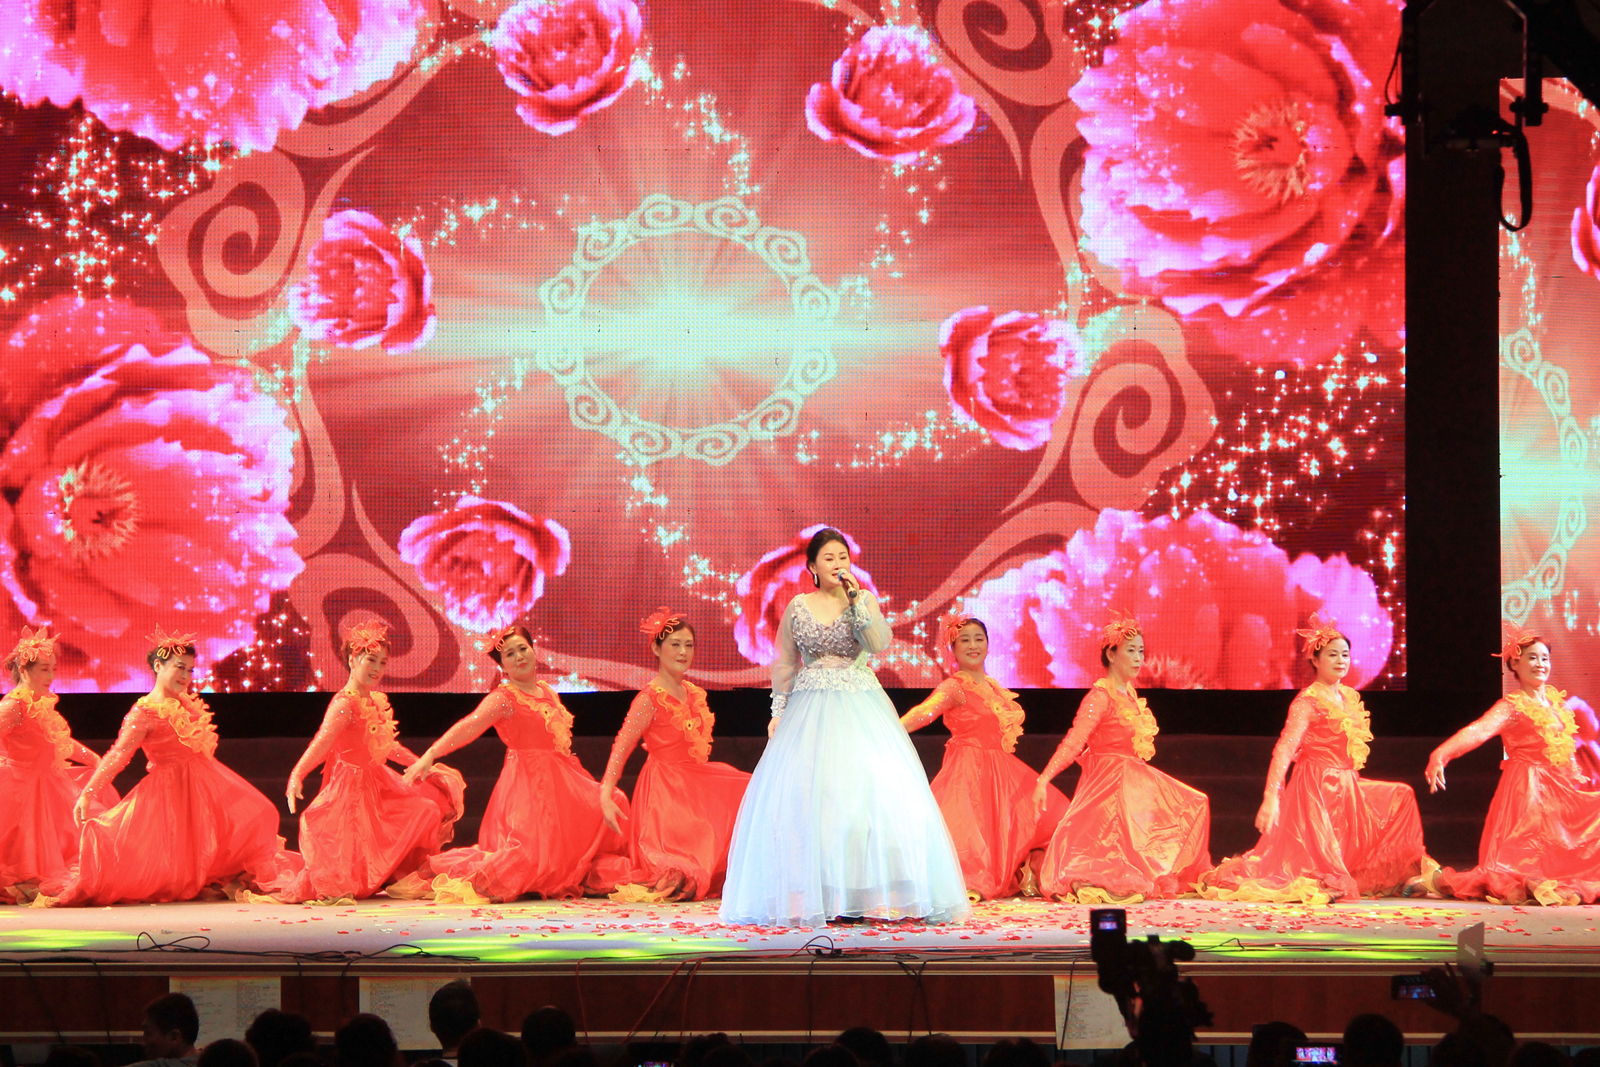 安徽佛教梵呗艺术团文艺演出节目:歌伴舞《中国梦》